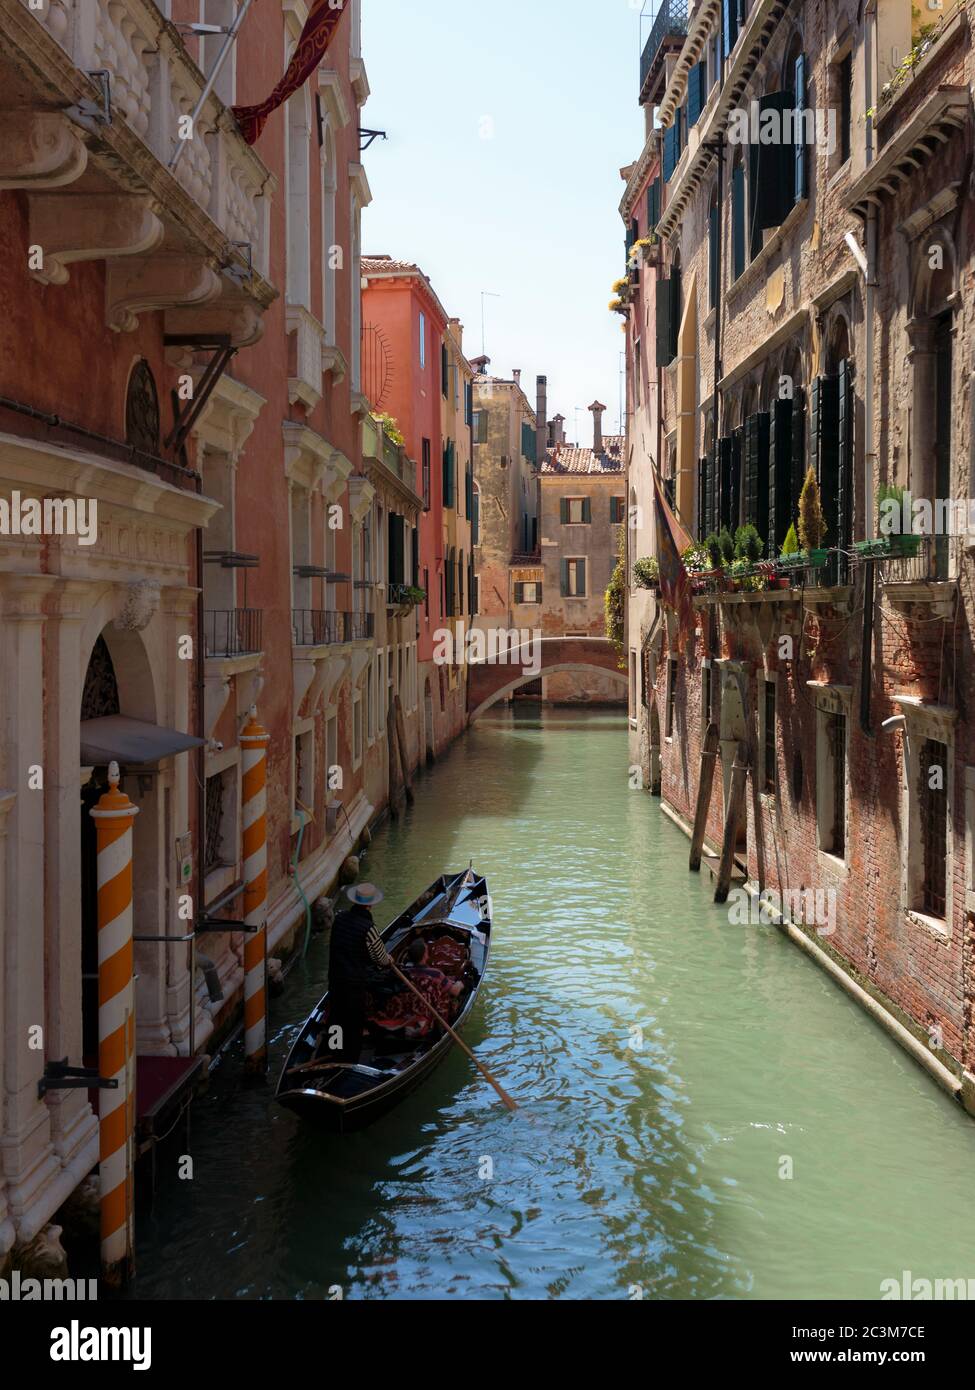 Eine Gondel in der engen Passage des Kanals Cannaregio, Venedig, Italien Stockfoto